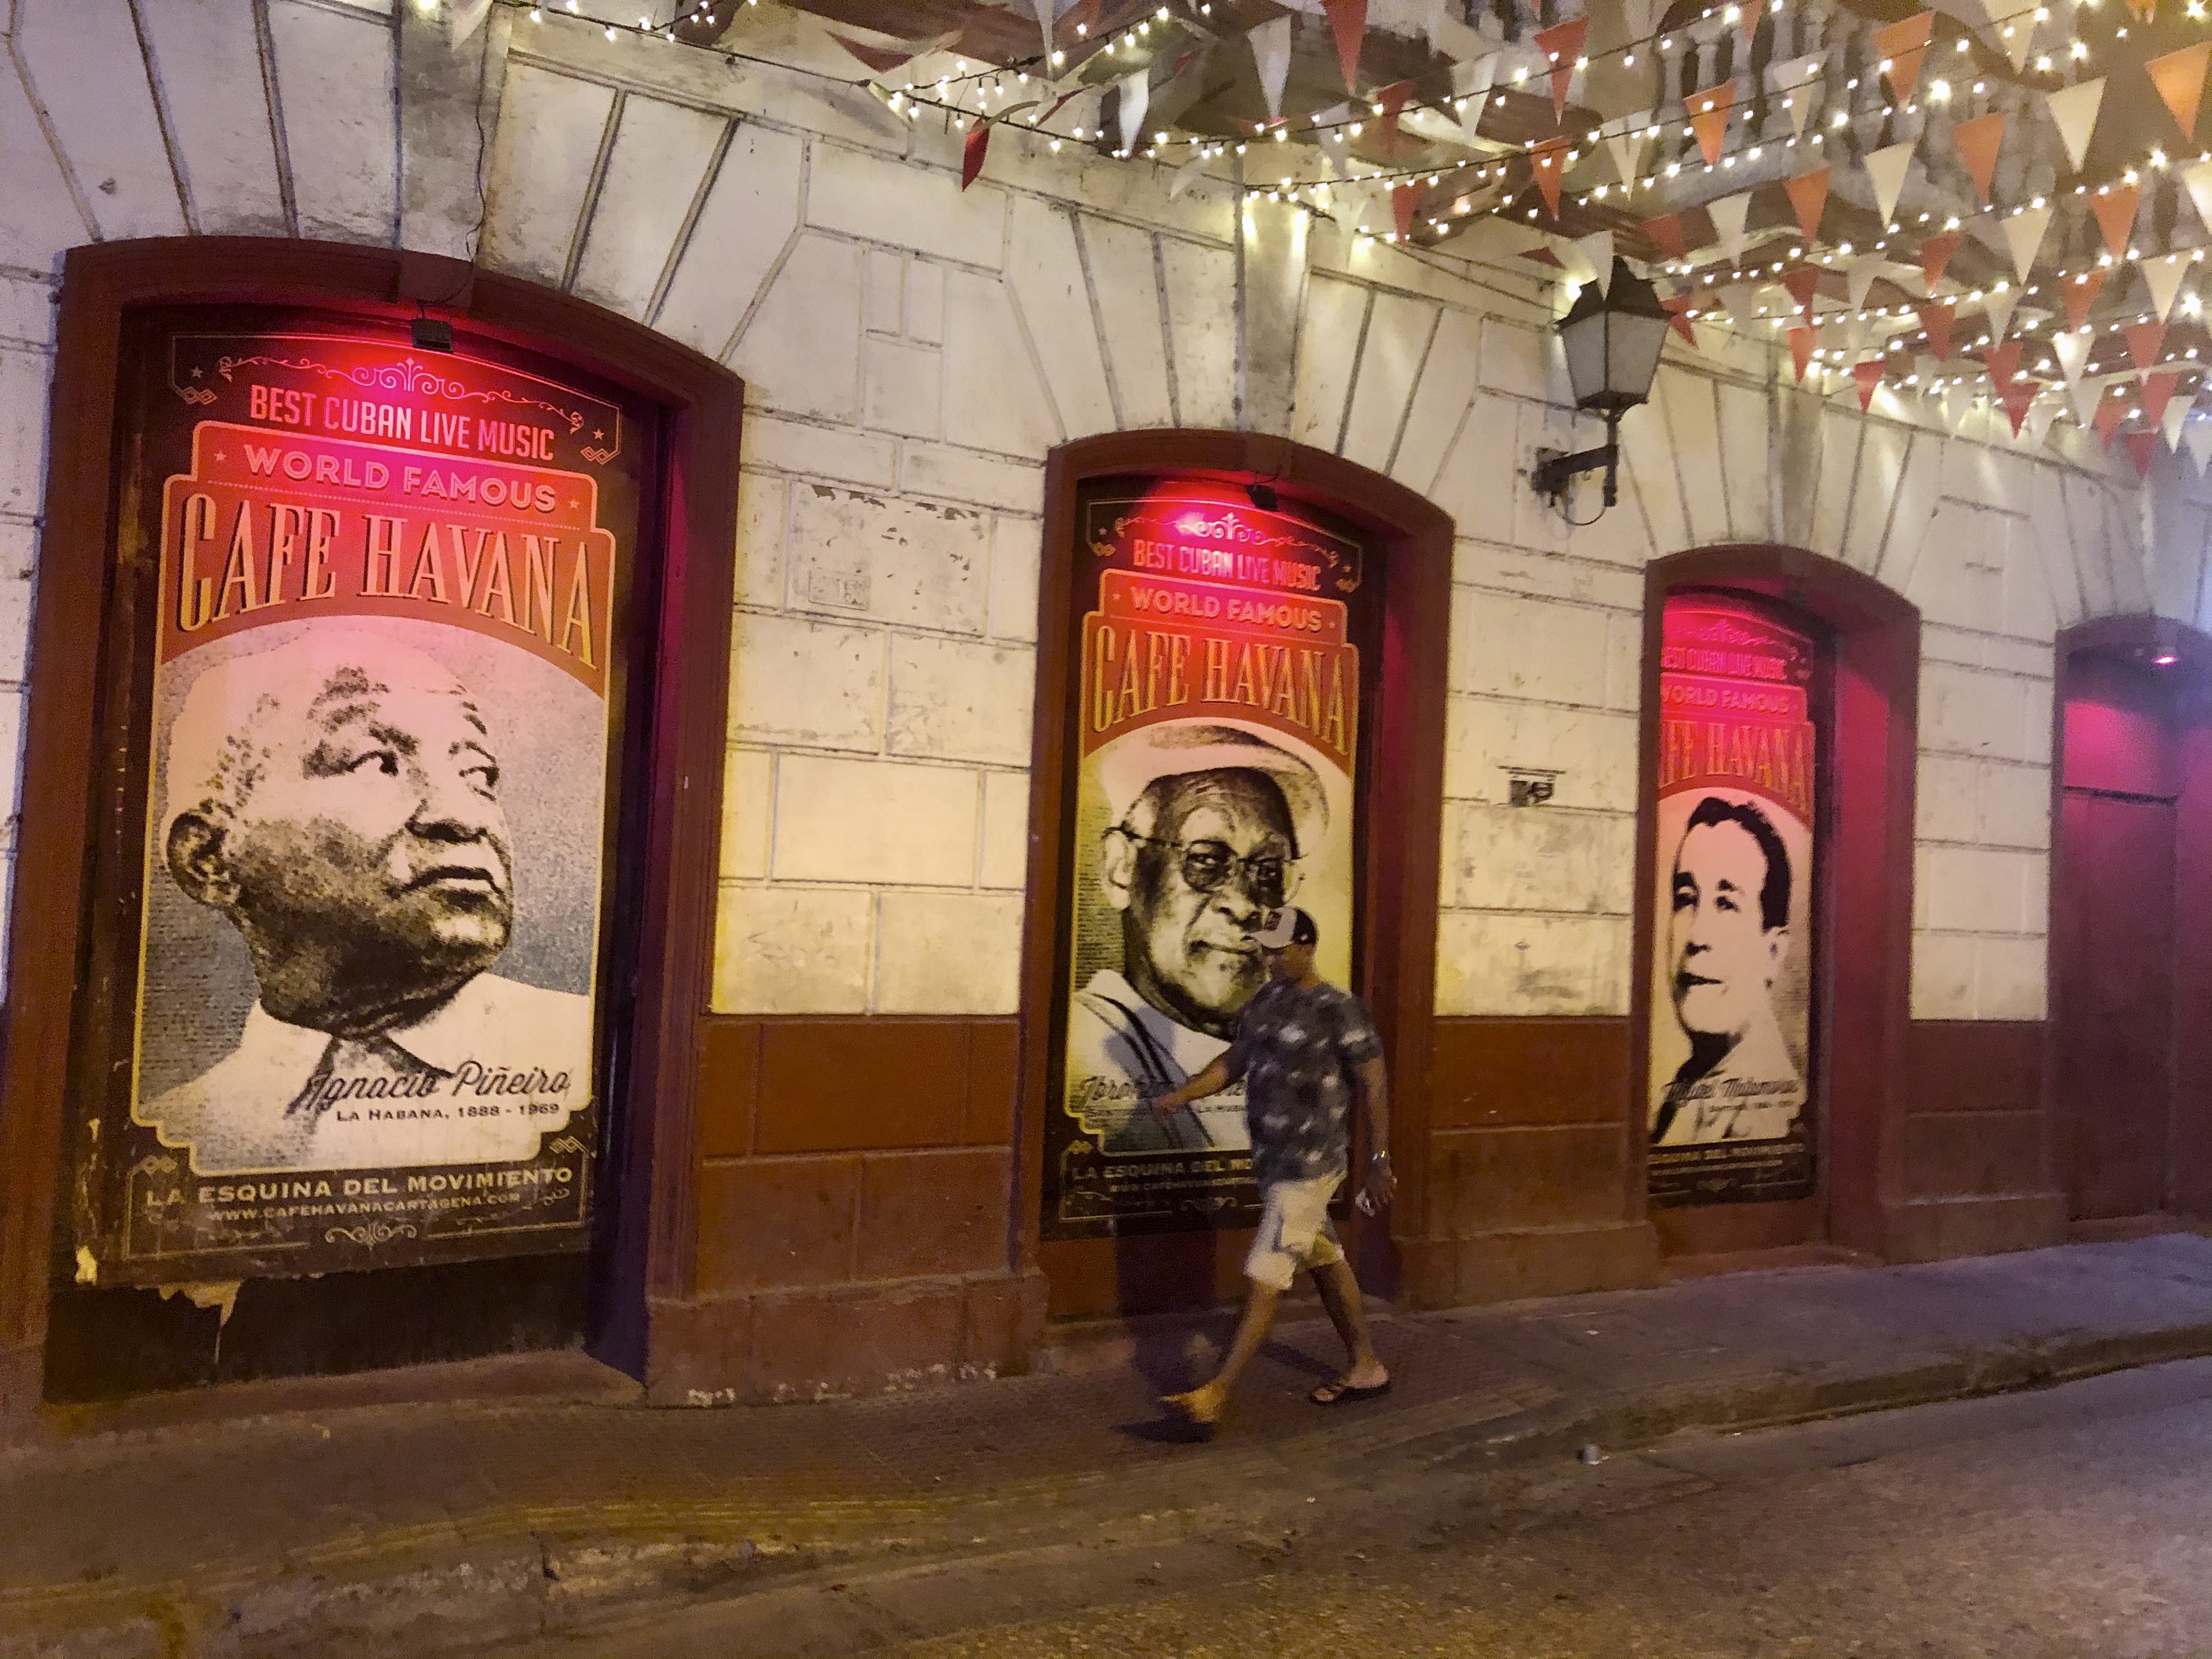 A világhírű Havana Club Getsemaniban, ami az egyik legismertebb kubai rum neve is. Cartagena bohémnegyedét pár éve a világ tíz legtrendibb városrésze közé választották, a Havana Club, a Szentháromság téri zsongás, a street art, a kiváló éttermek mind-mind hozzájárult ehhez. Tényleg a top tízben a helye.